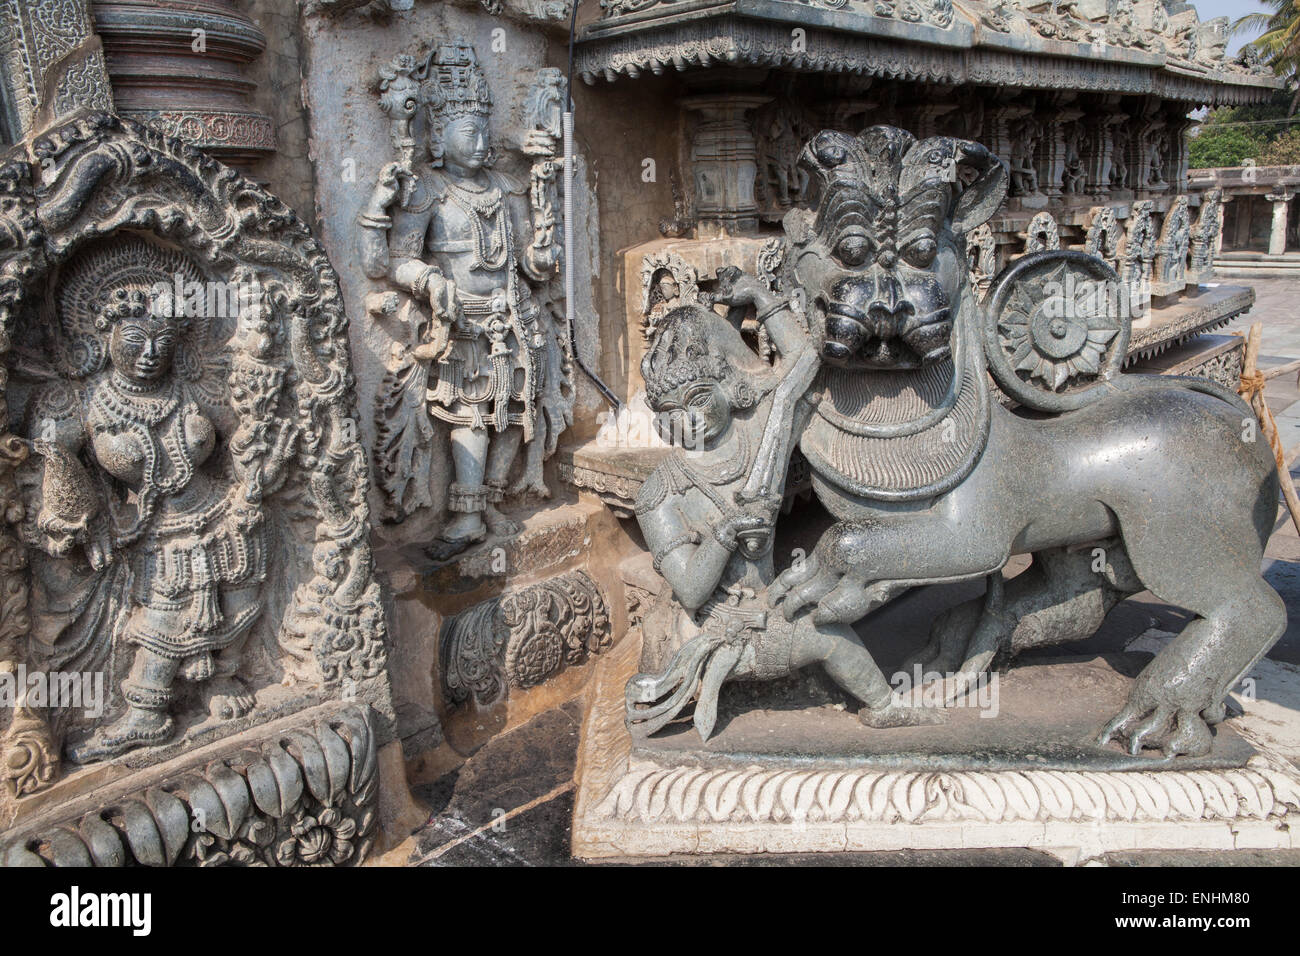 Esculturas y bajorrelieves en el templo Chennakesava en Belur Foto de stock